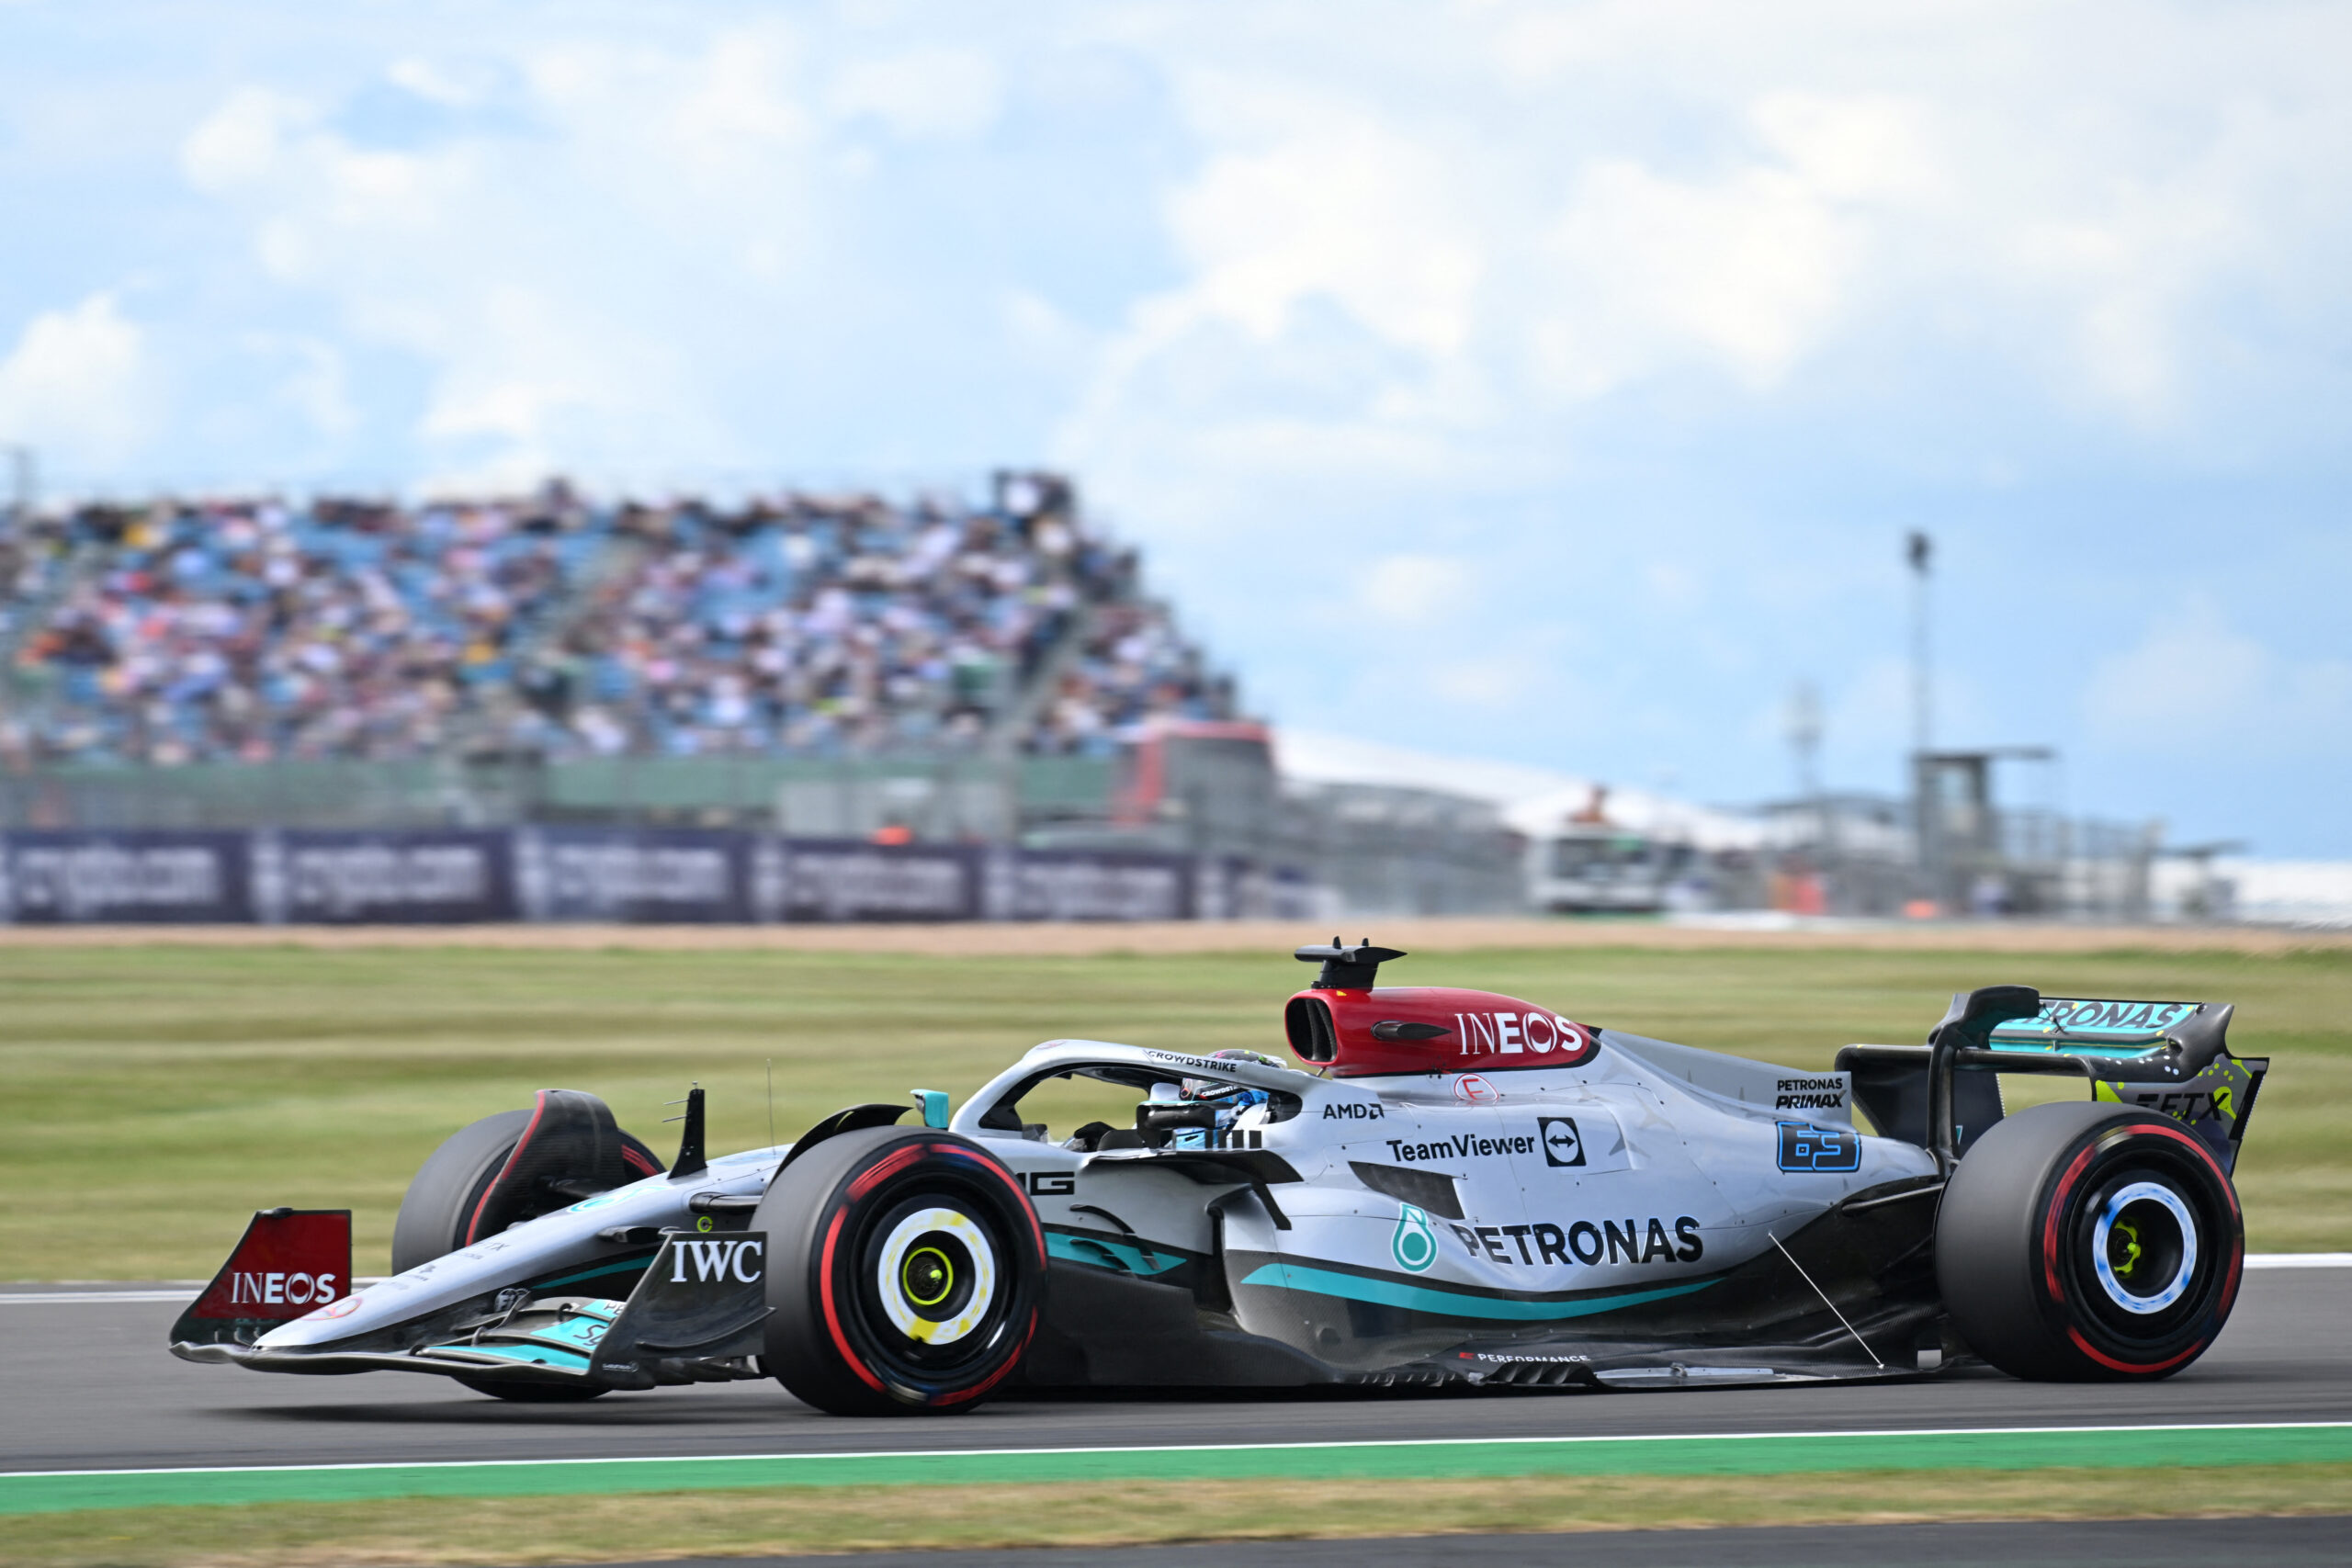 Russell aprueba el ritmo de Mercedes pero ve ‘margen de mejora’ – Fórmula 1 Noticias